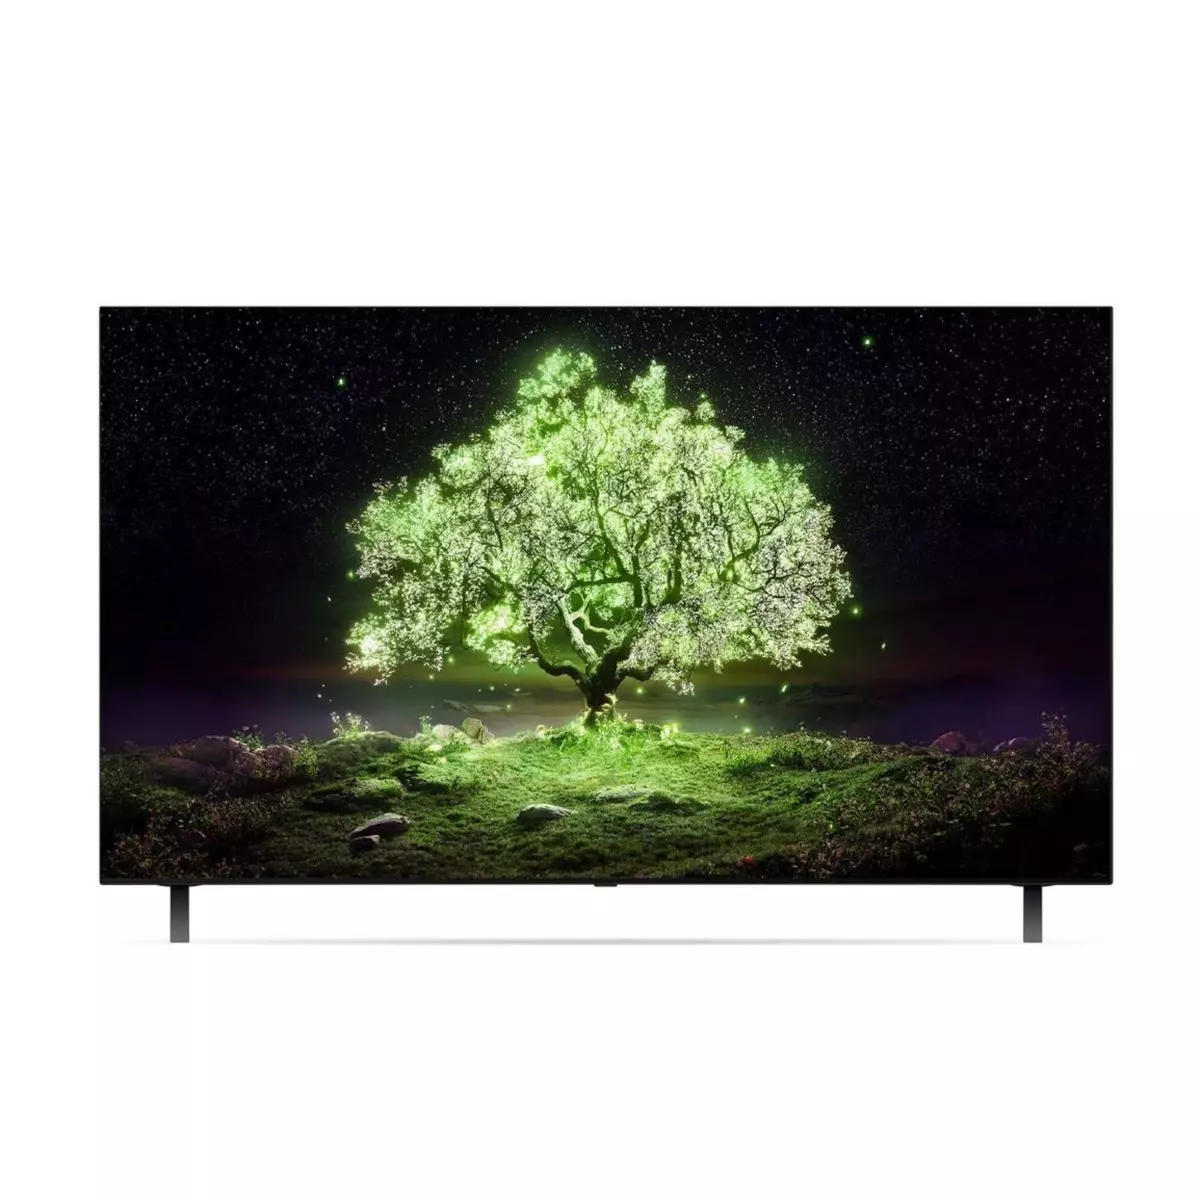 LG OLED55A1 TV OLED 4K UHD 139 cm Smart TV